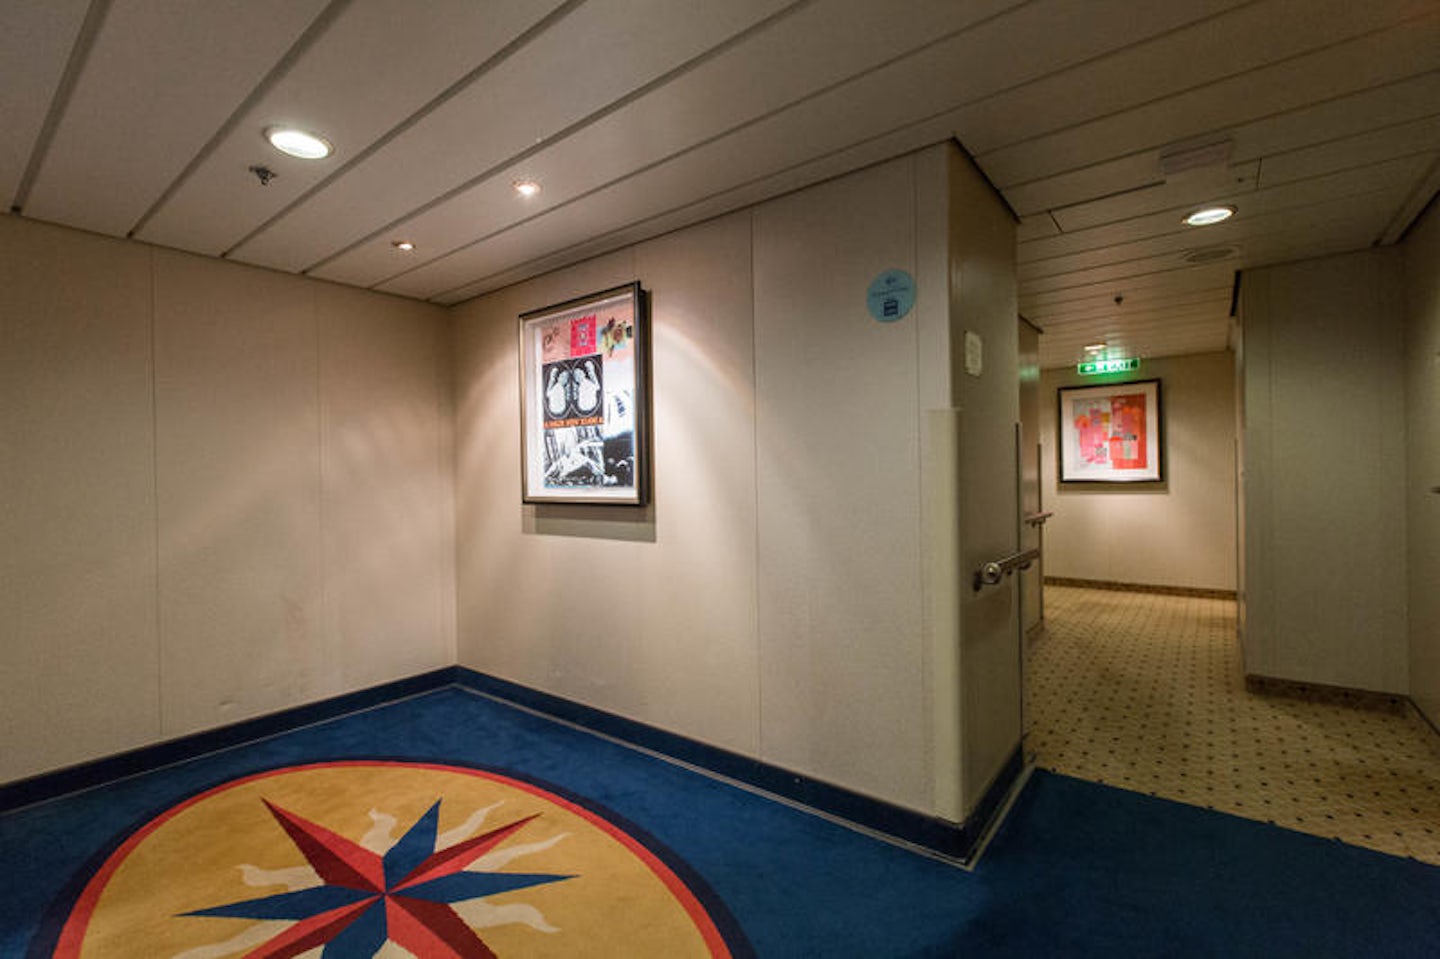 Hallways on Radiance of the Seas